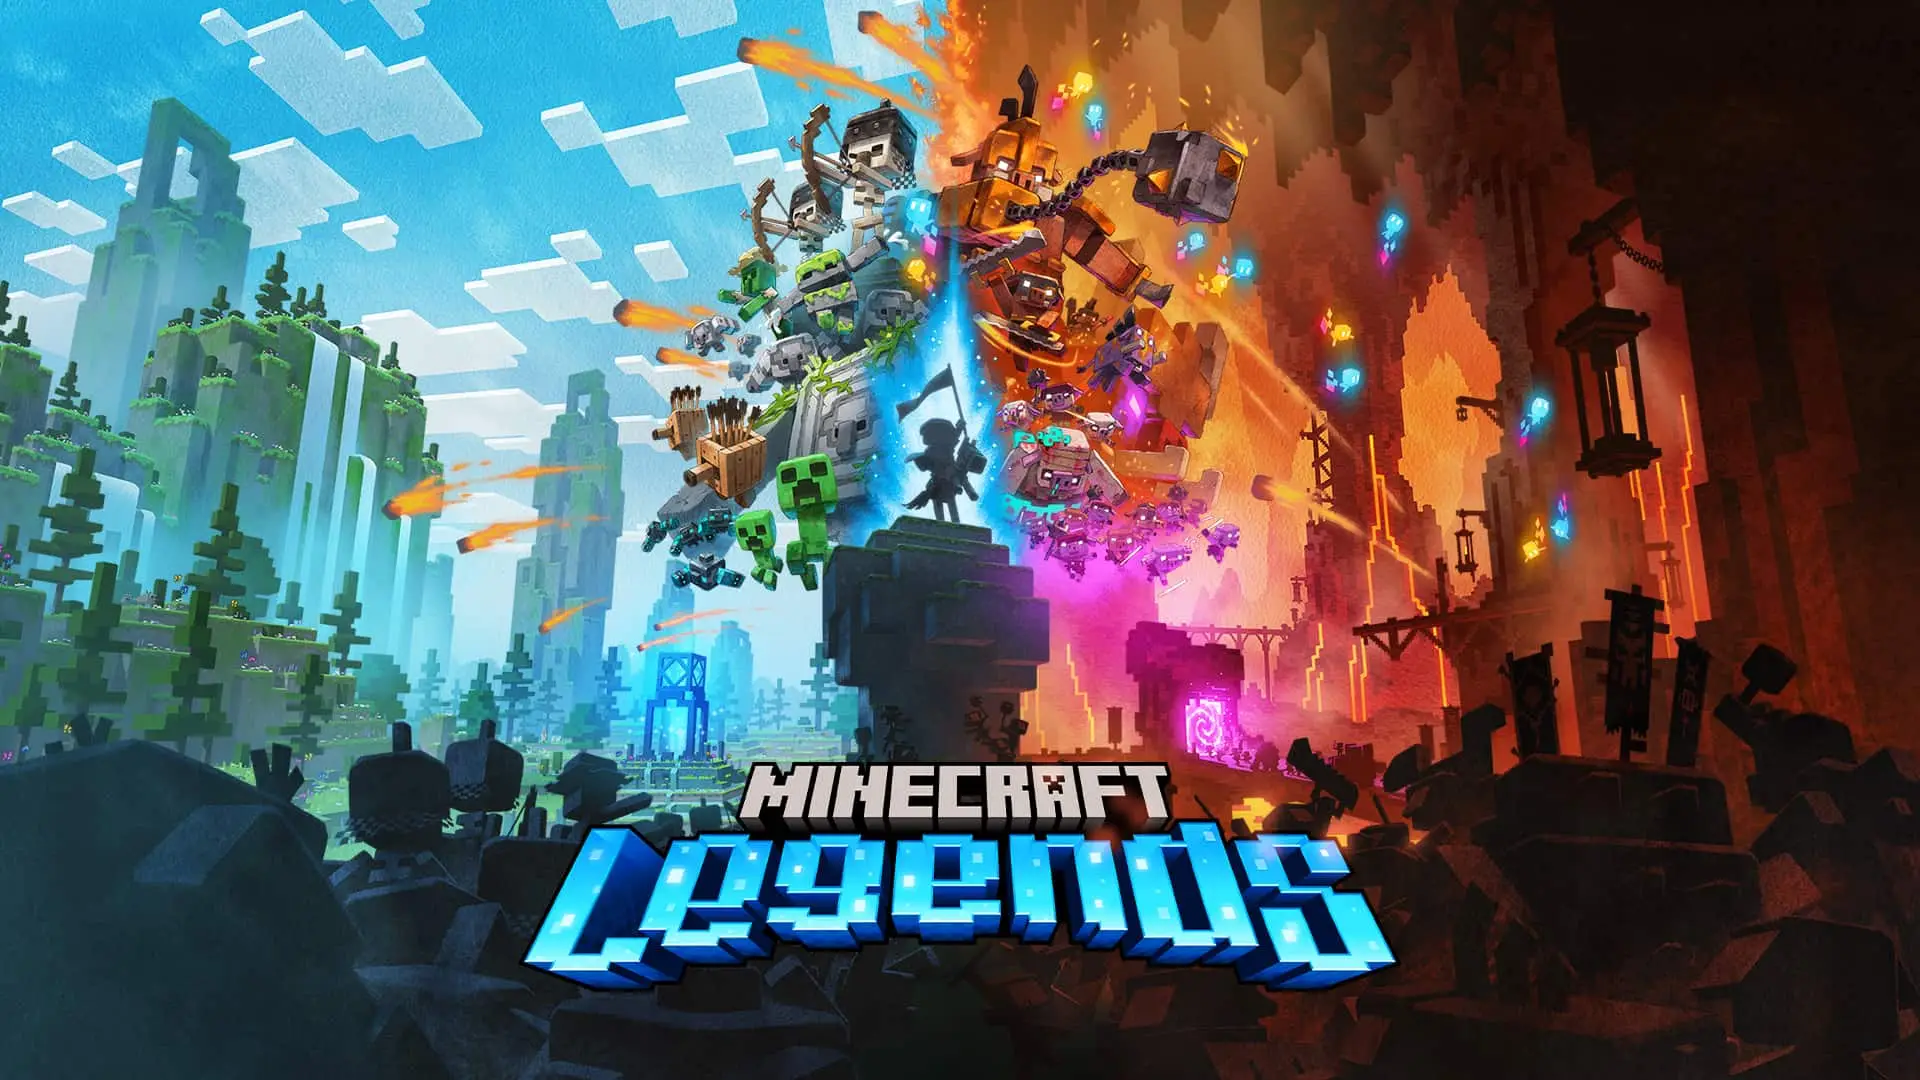 Artwork del juego Minecraft Legends con muchos de sus personajes agrupados en dos bandos